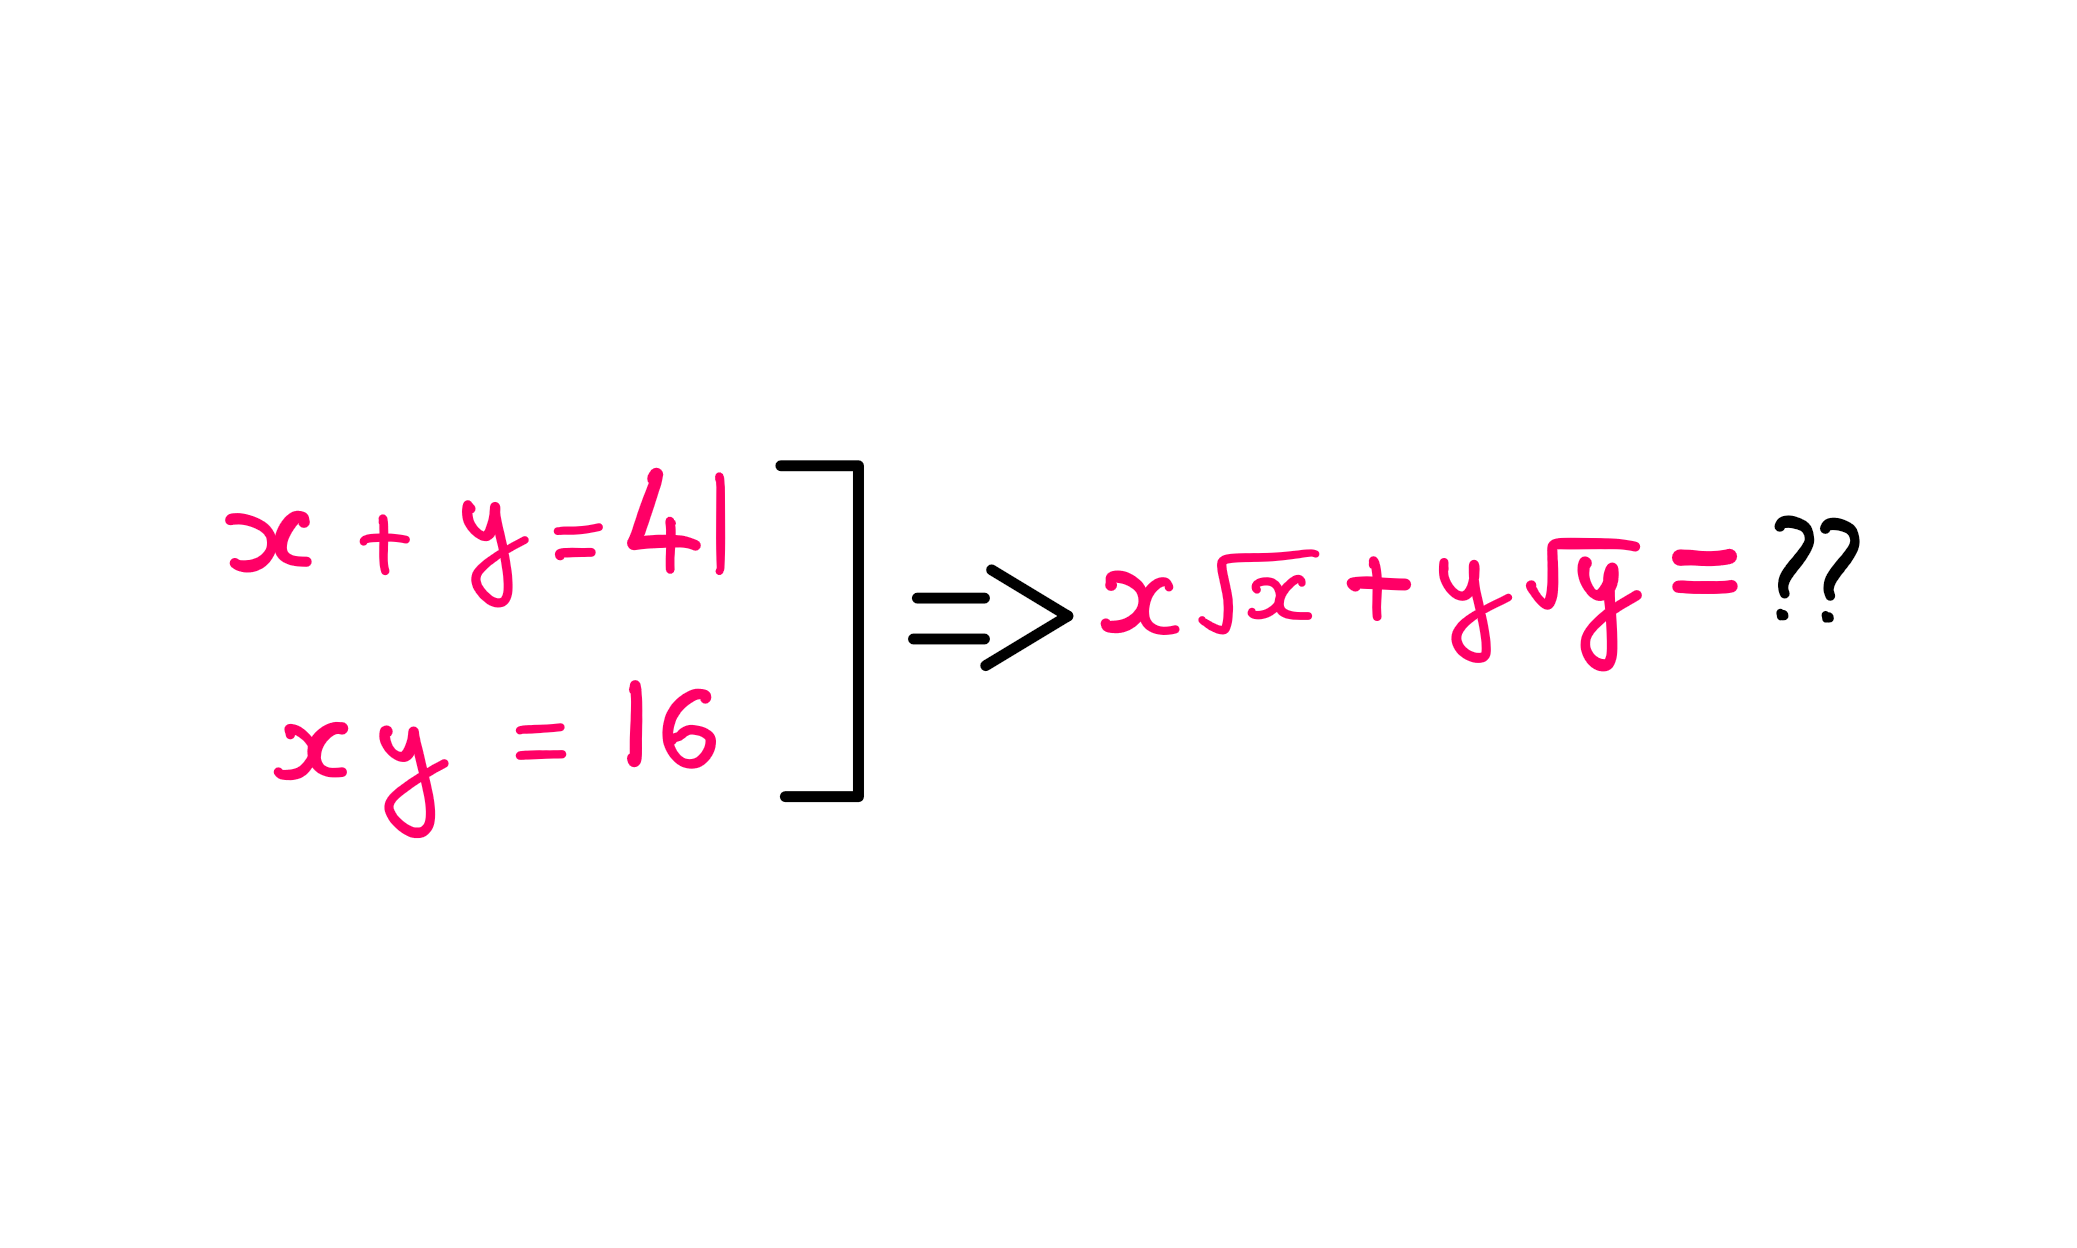 How To Really Solve This Tricky Algebra Problem? (VI) - x + y = 41; x*y = 16; x √(x) + y √(y) = ??